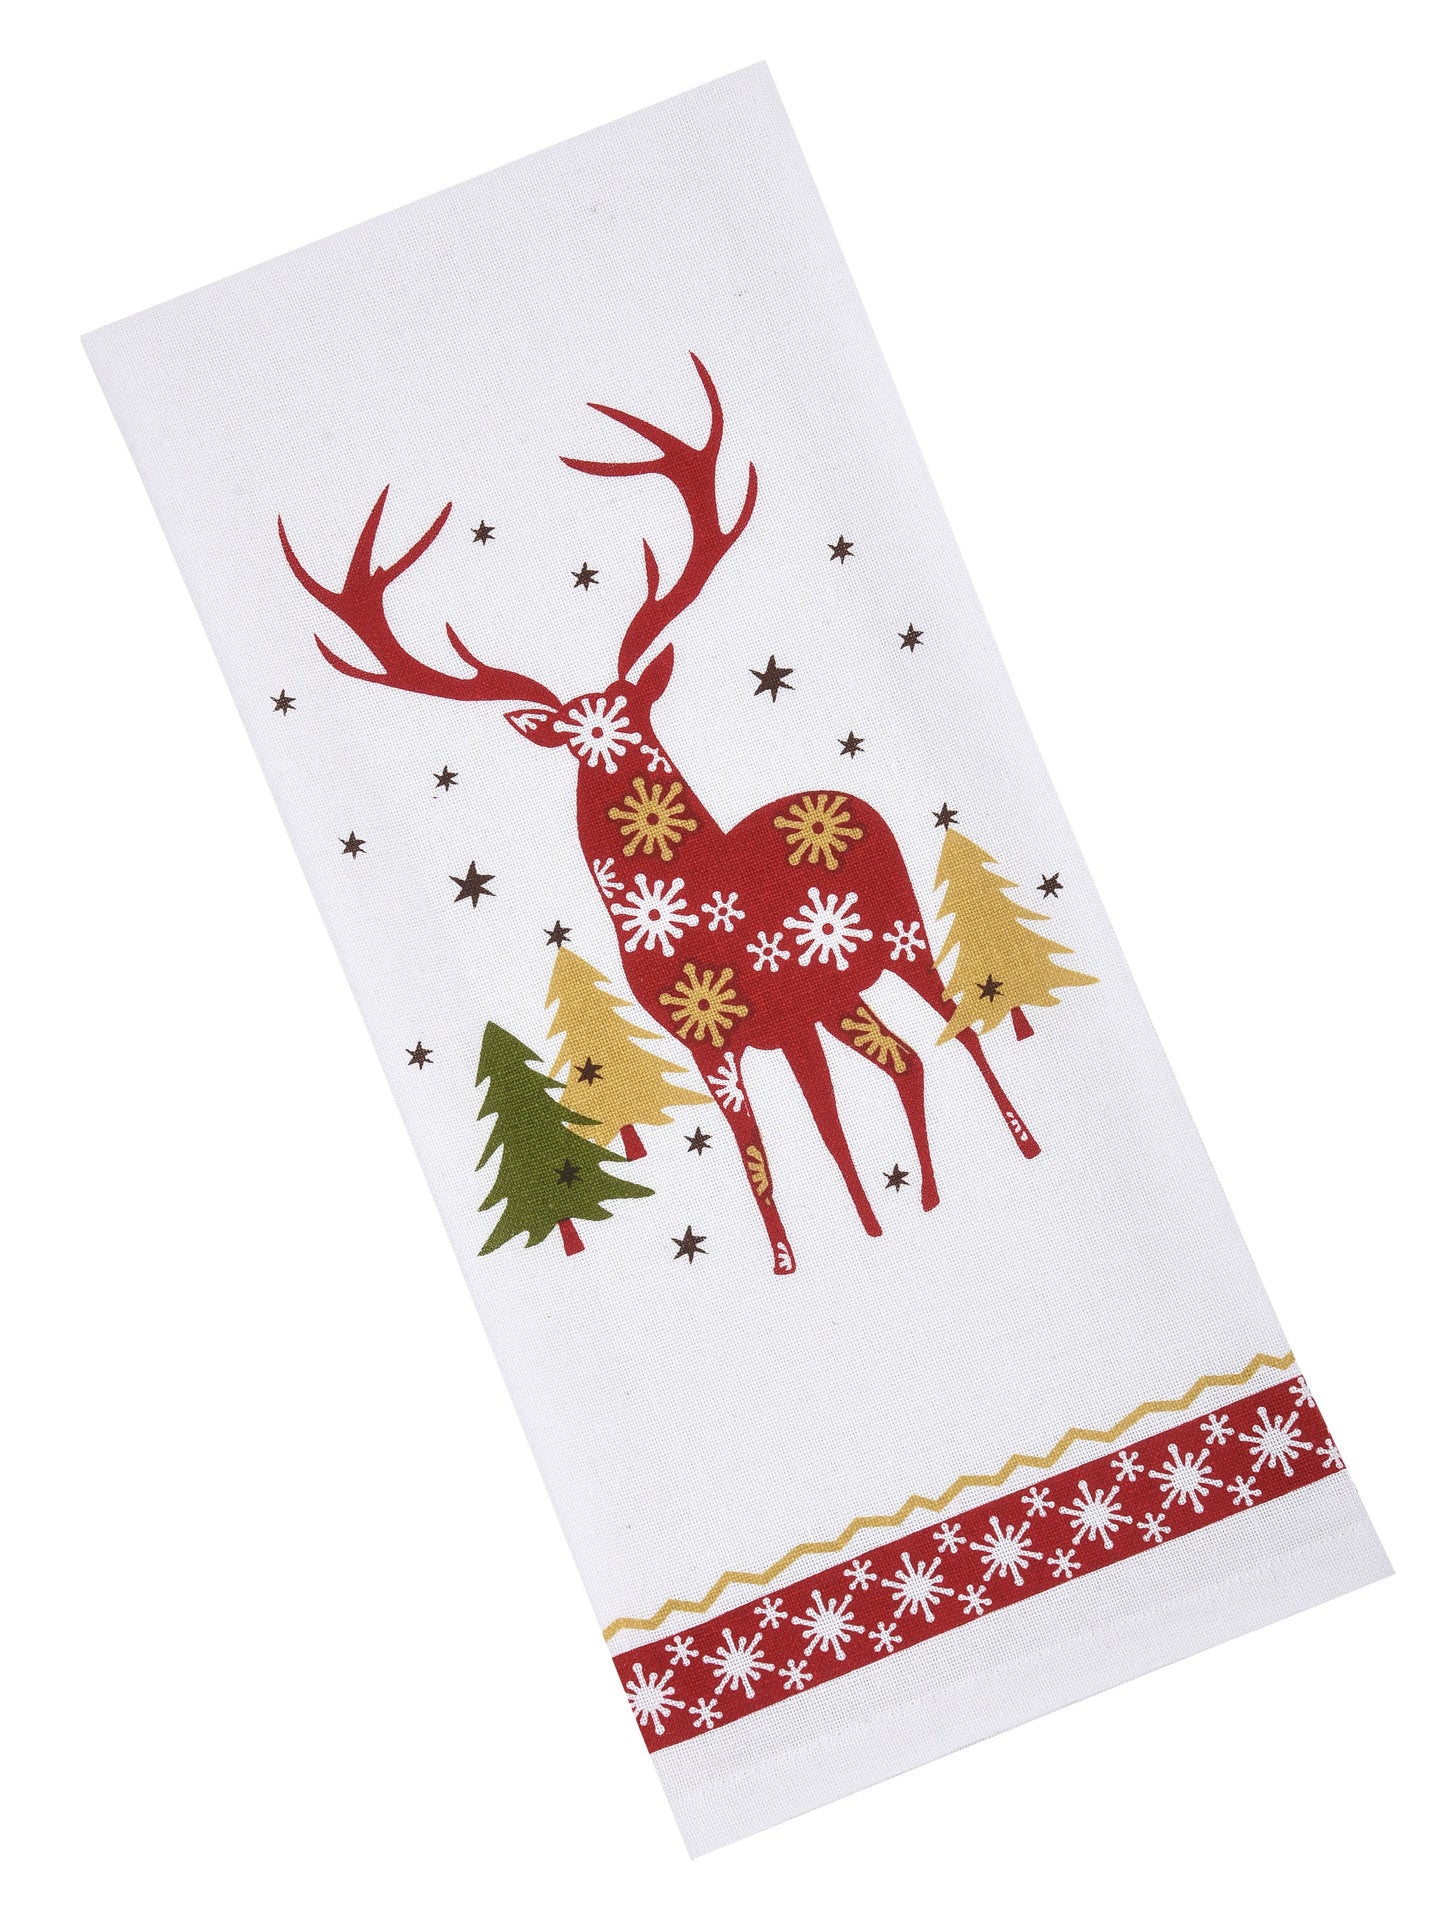 tea towels pattern -x-mas, reindeer